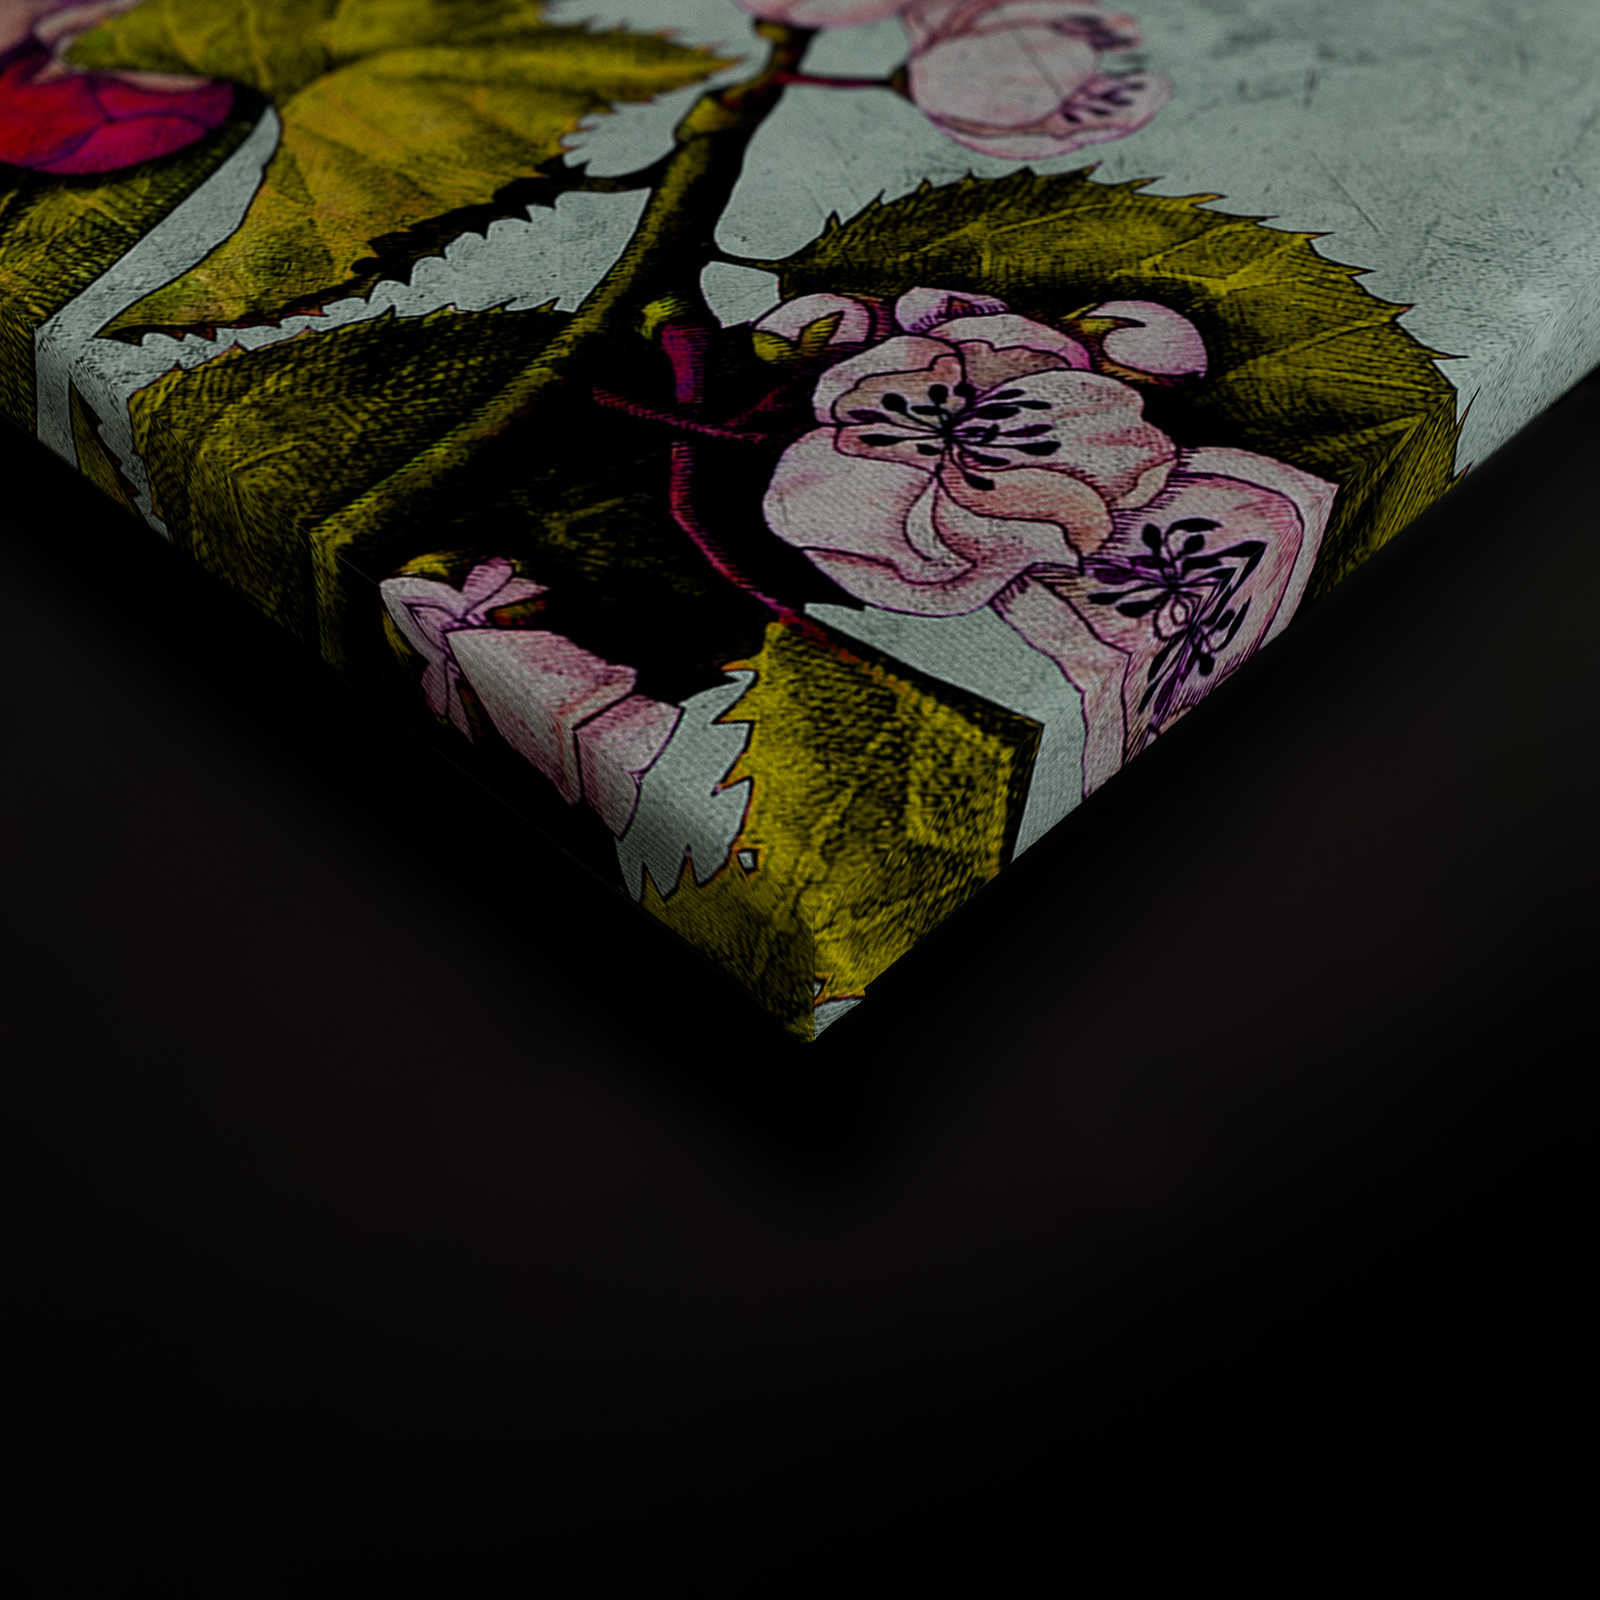             Tropical Passion 2 - Leinwandbild mit Blüten und Knospen – 0,90 m x 0,60 m
        